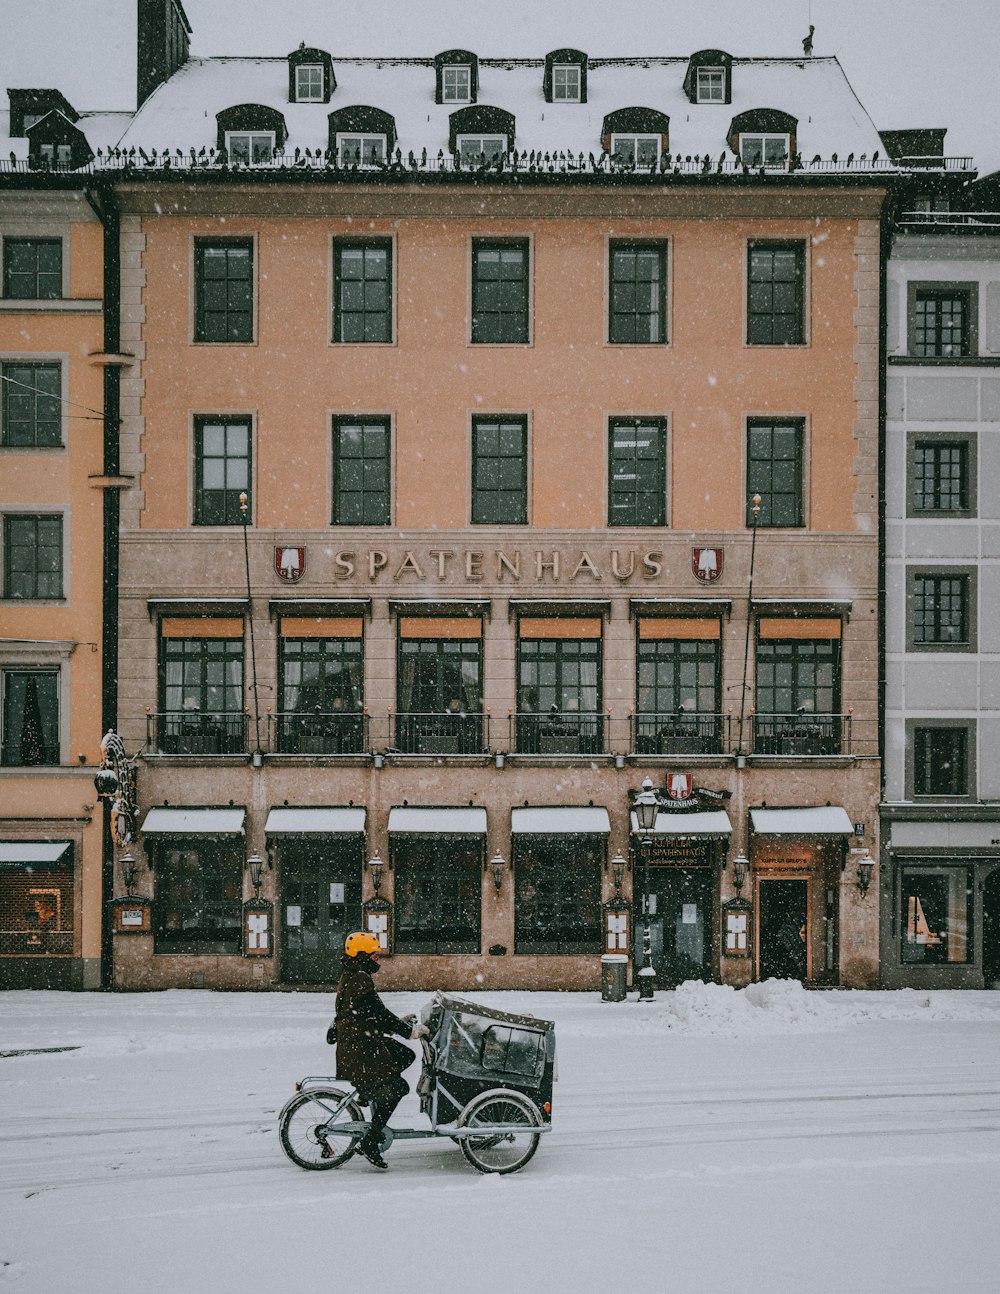 昼間、茶色のコンクリートの建物近くの雪に覆われた道路で黒いバイクに乗っている人